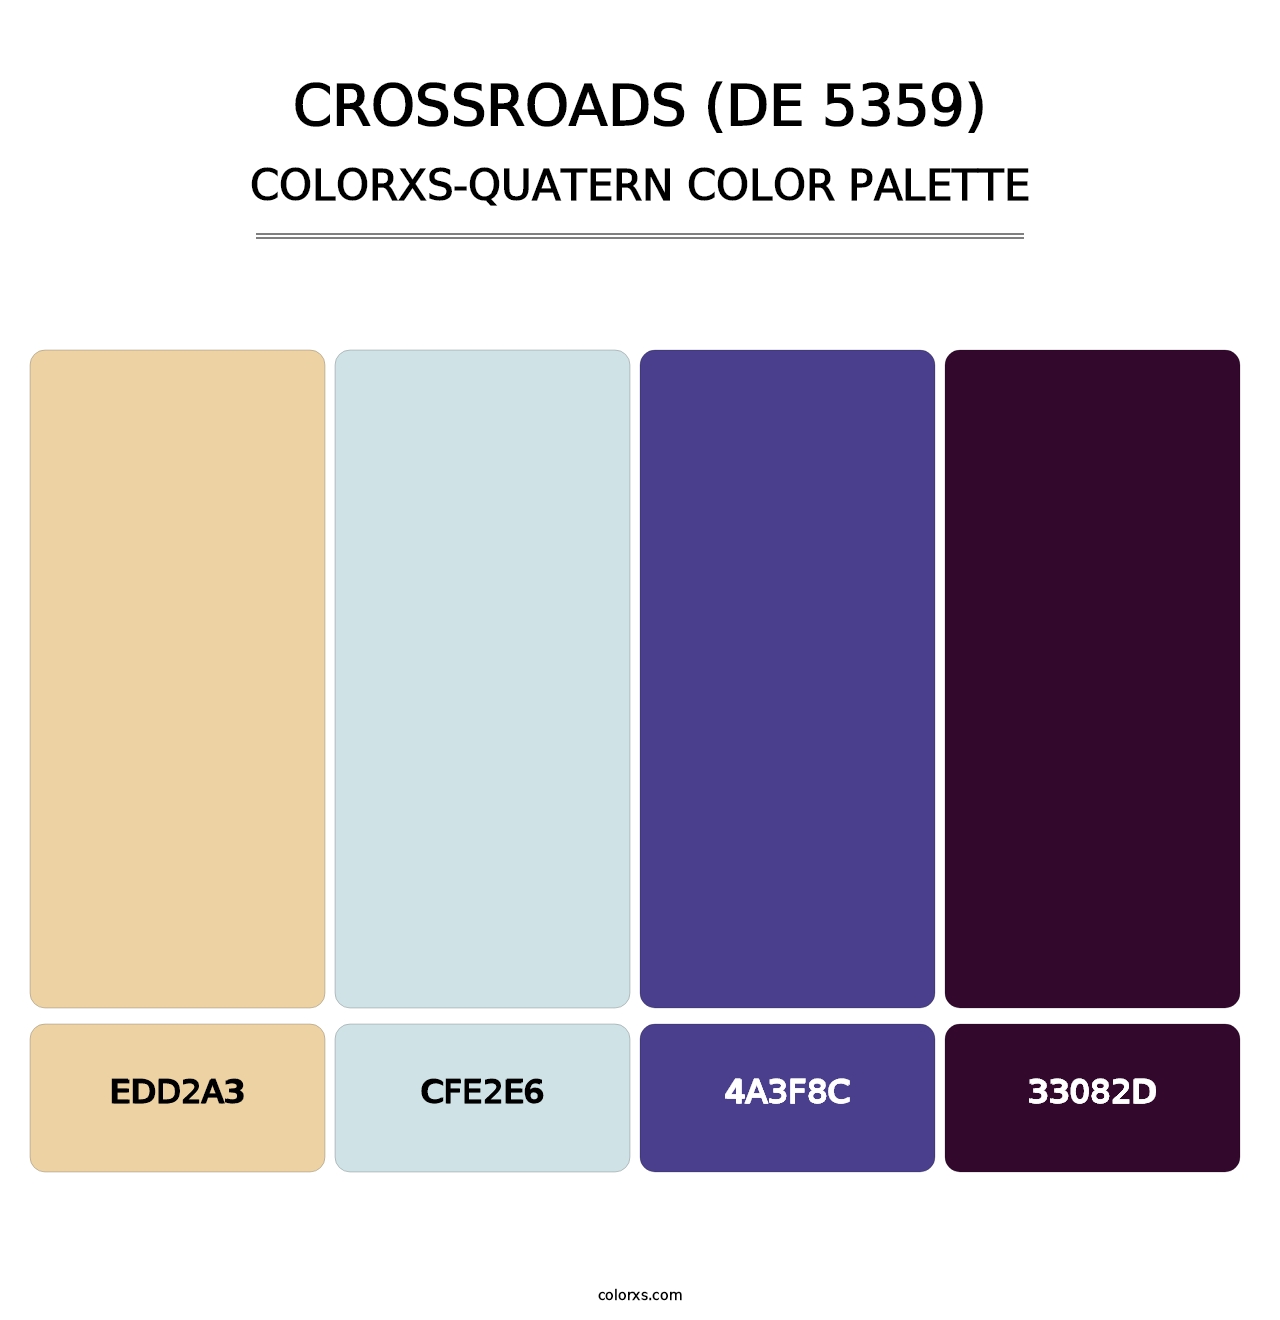 Crossroads (DE 5359) - Colorxs Quatern Palette